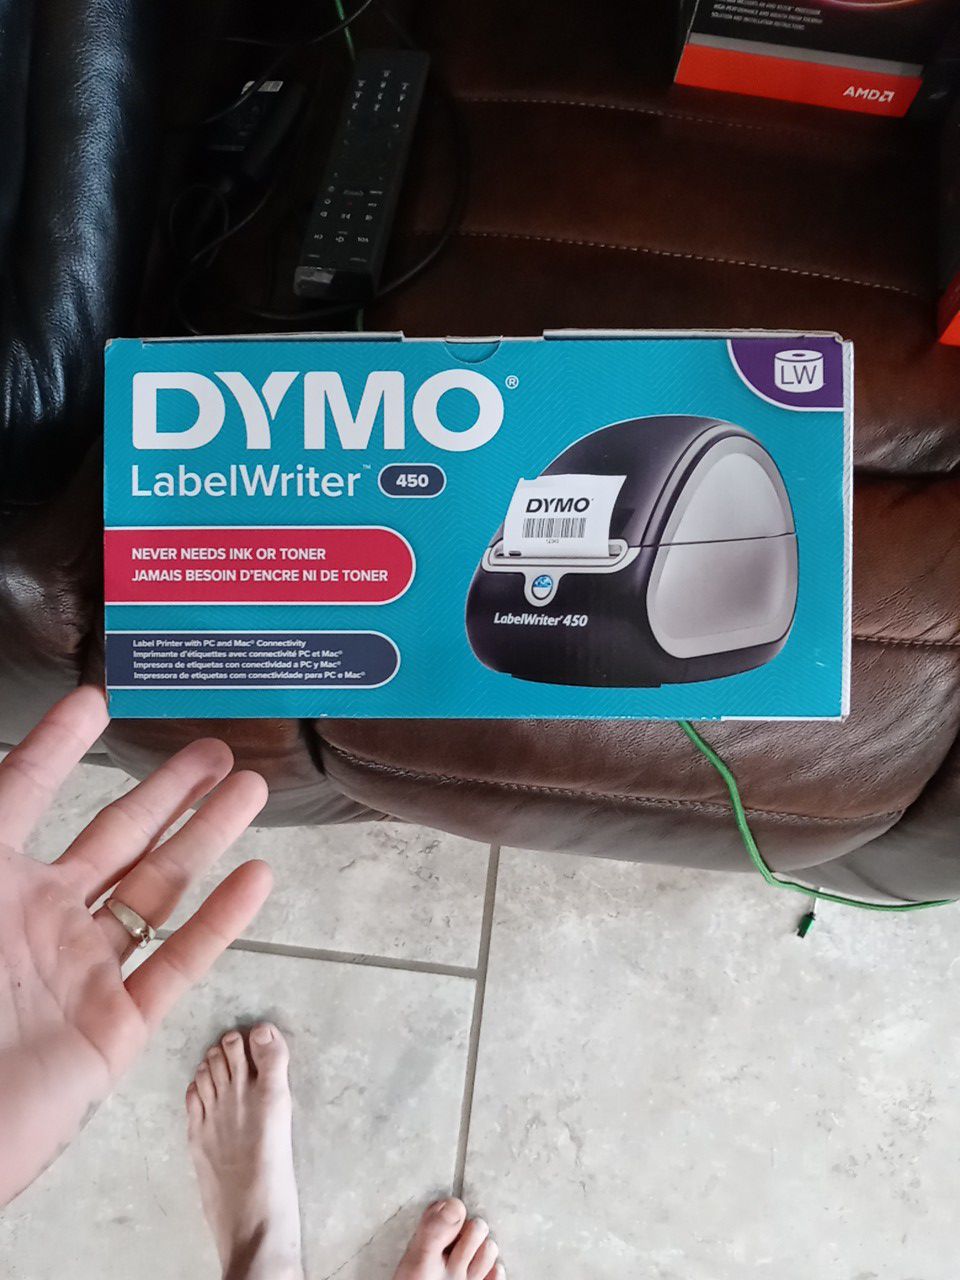 Dymo label writer